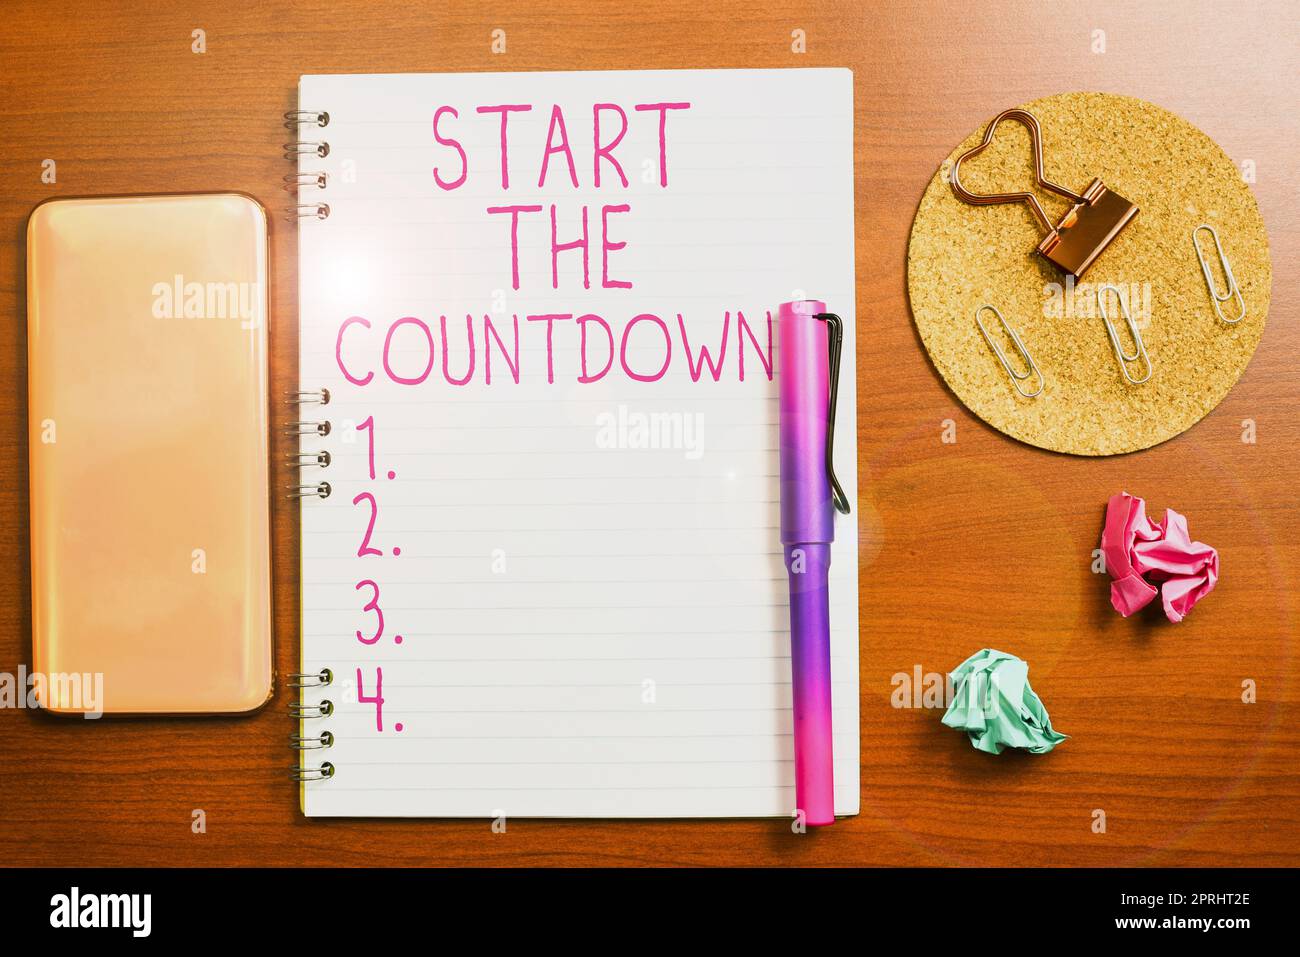 Konzeptionelle Bildunterschrift Starten Sie den Countdown. Business Showcase Sequenz der Rückwärtszählung zur Einstellung des Timers Stockfoto